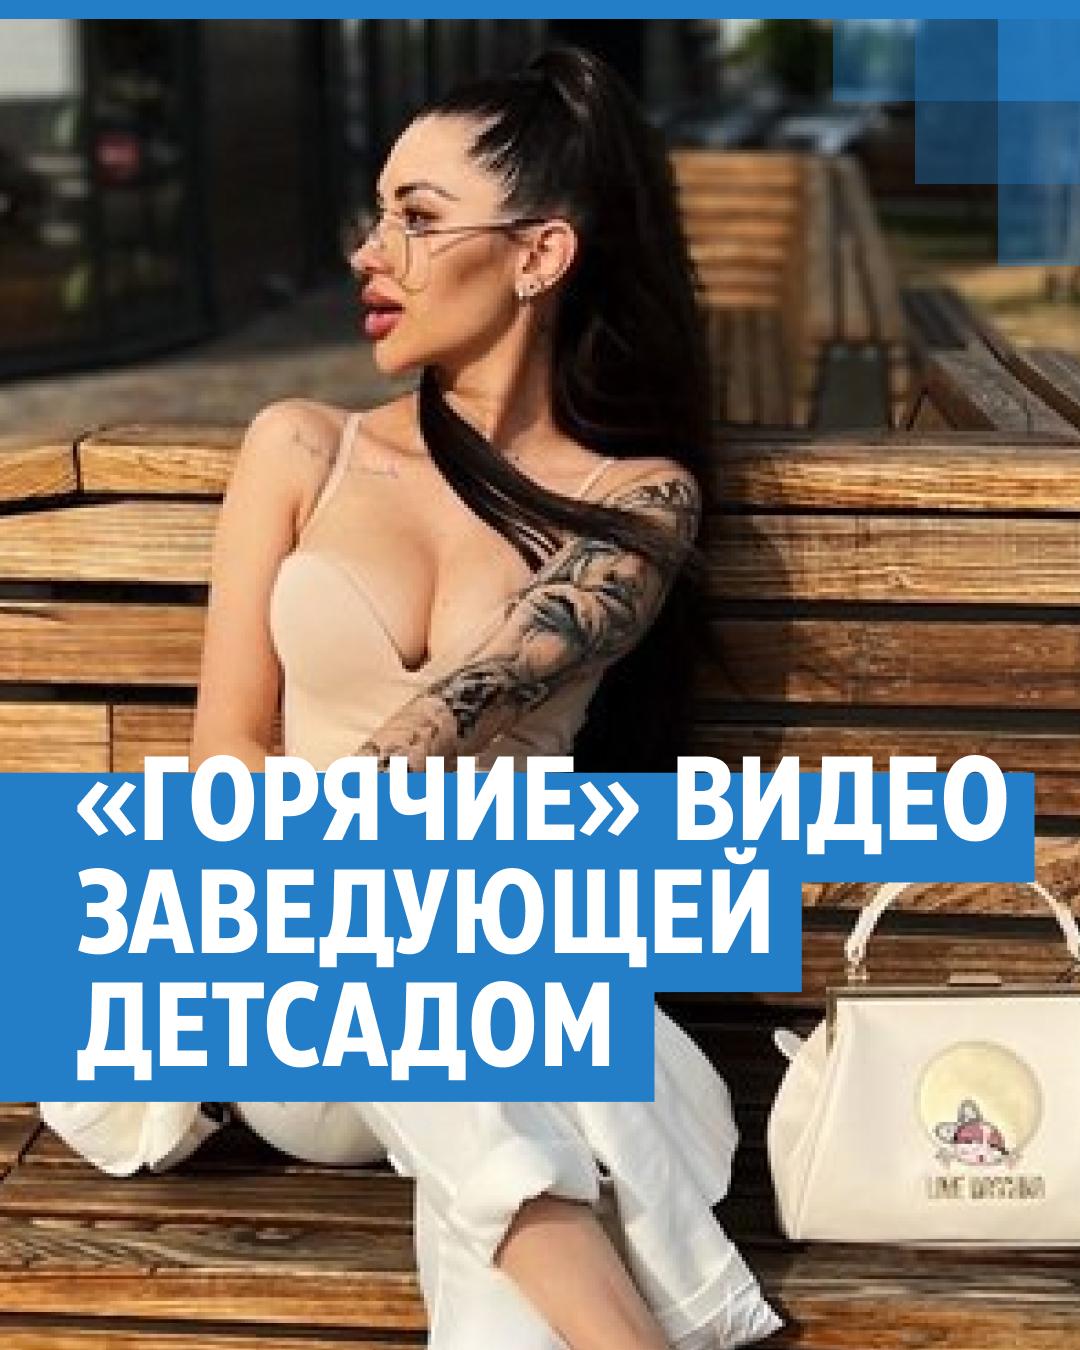 Сексуальные клипы | ВКонтакте